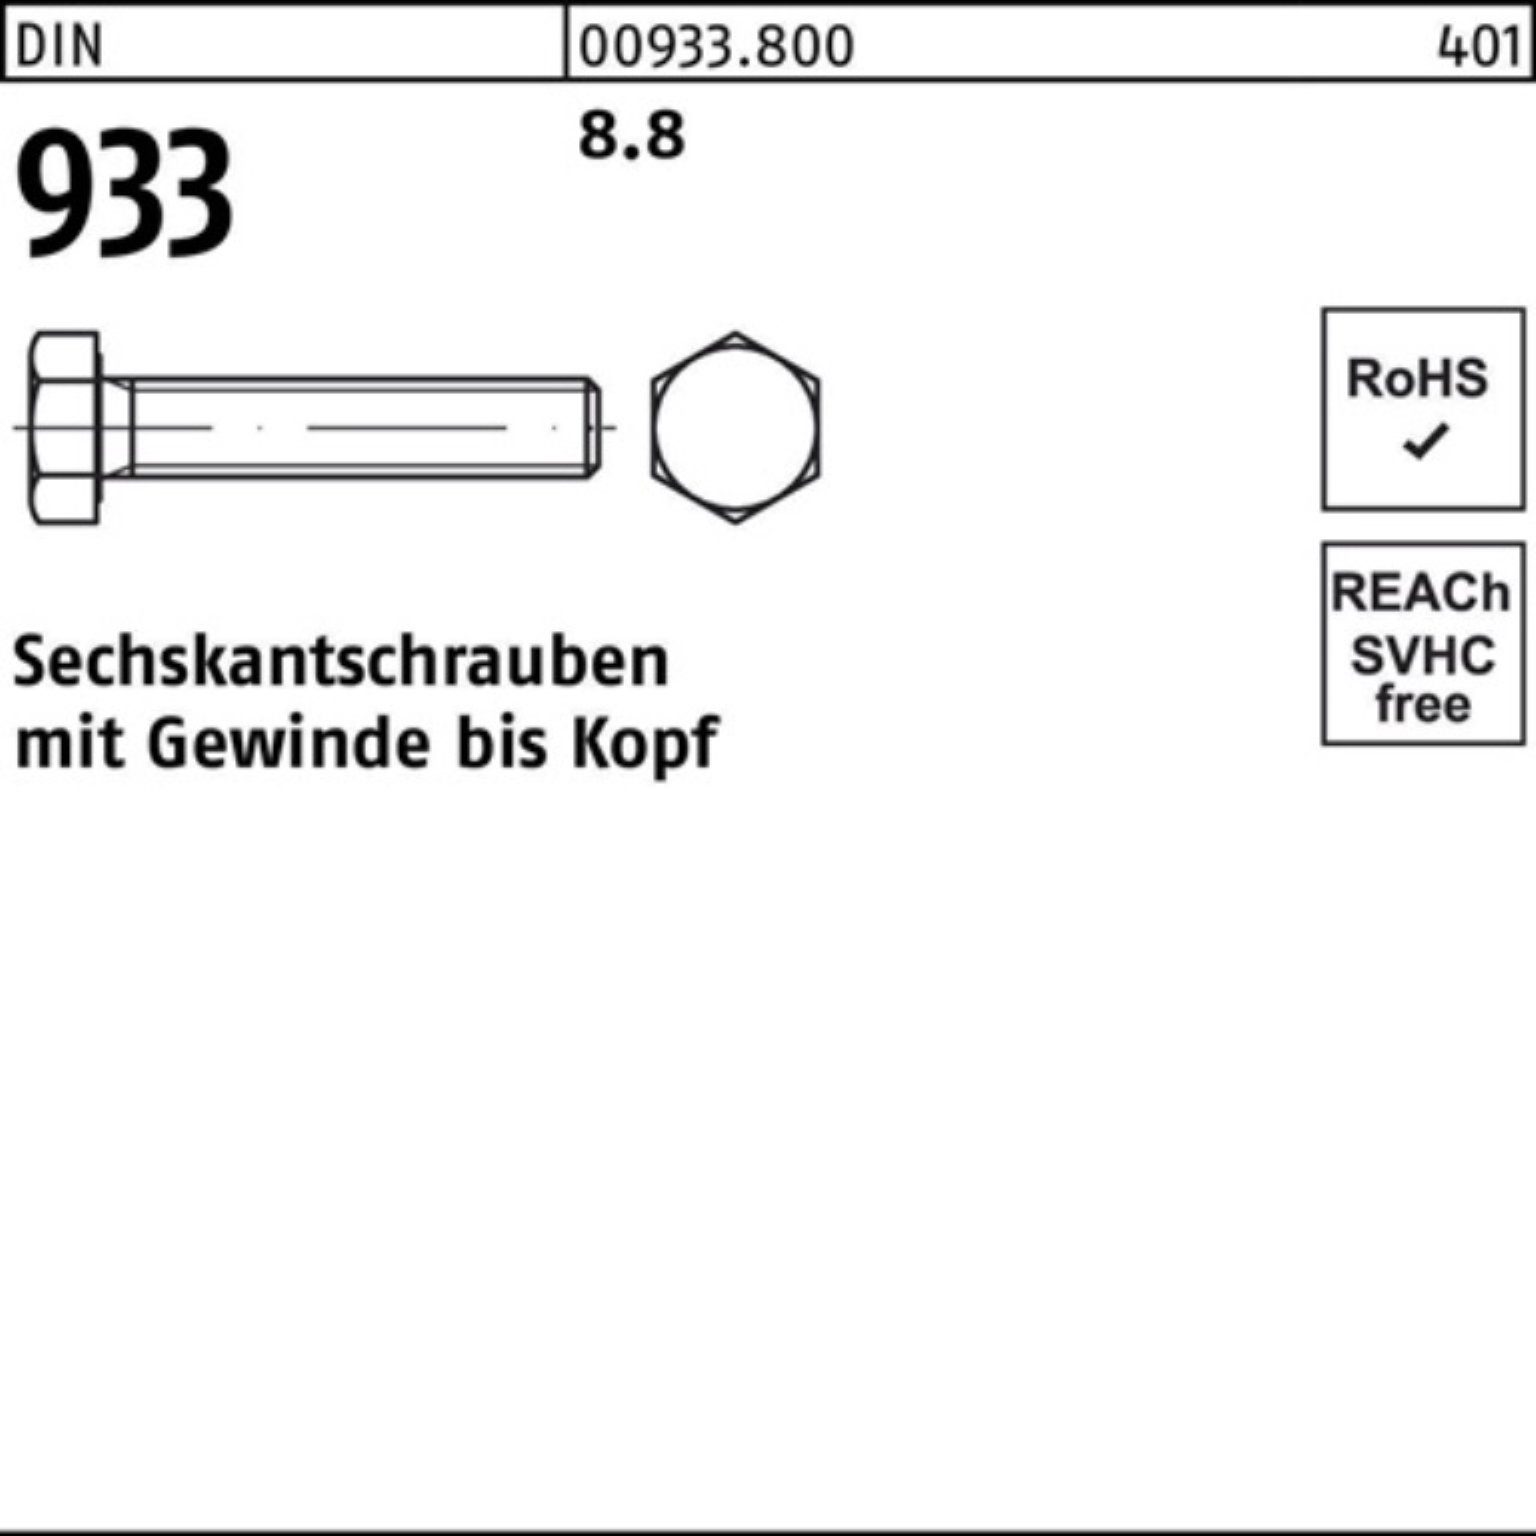 Reyher Sechskantschraube M4x DIN 933 Sechskantschraube Pack VG DIN 500er 933 8.8 500 18 Stück